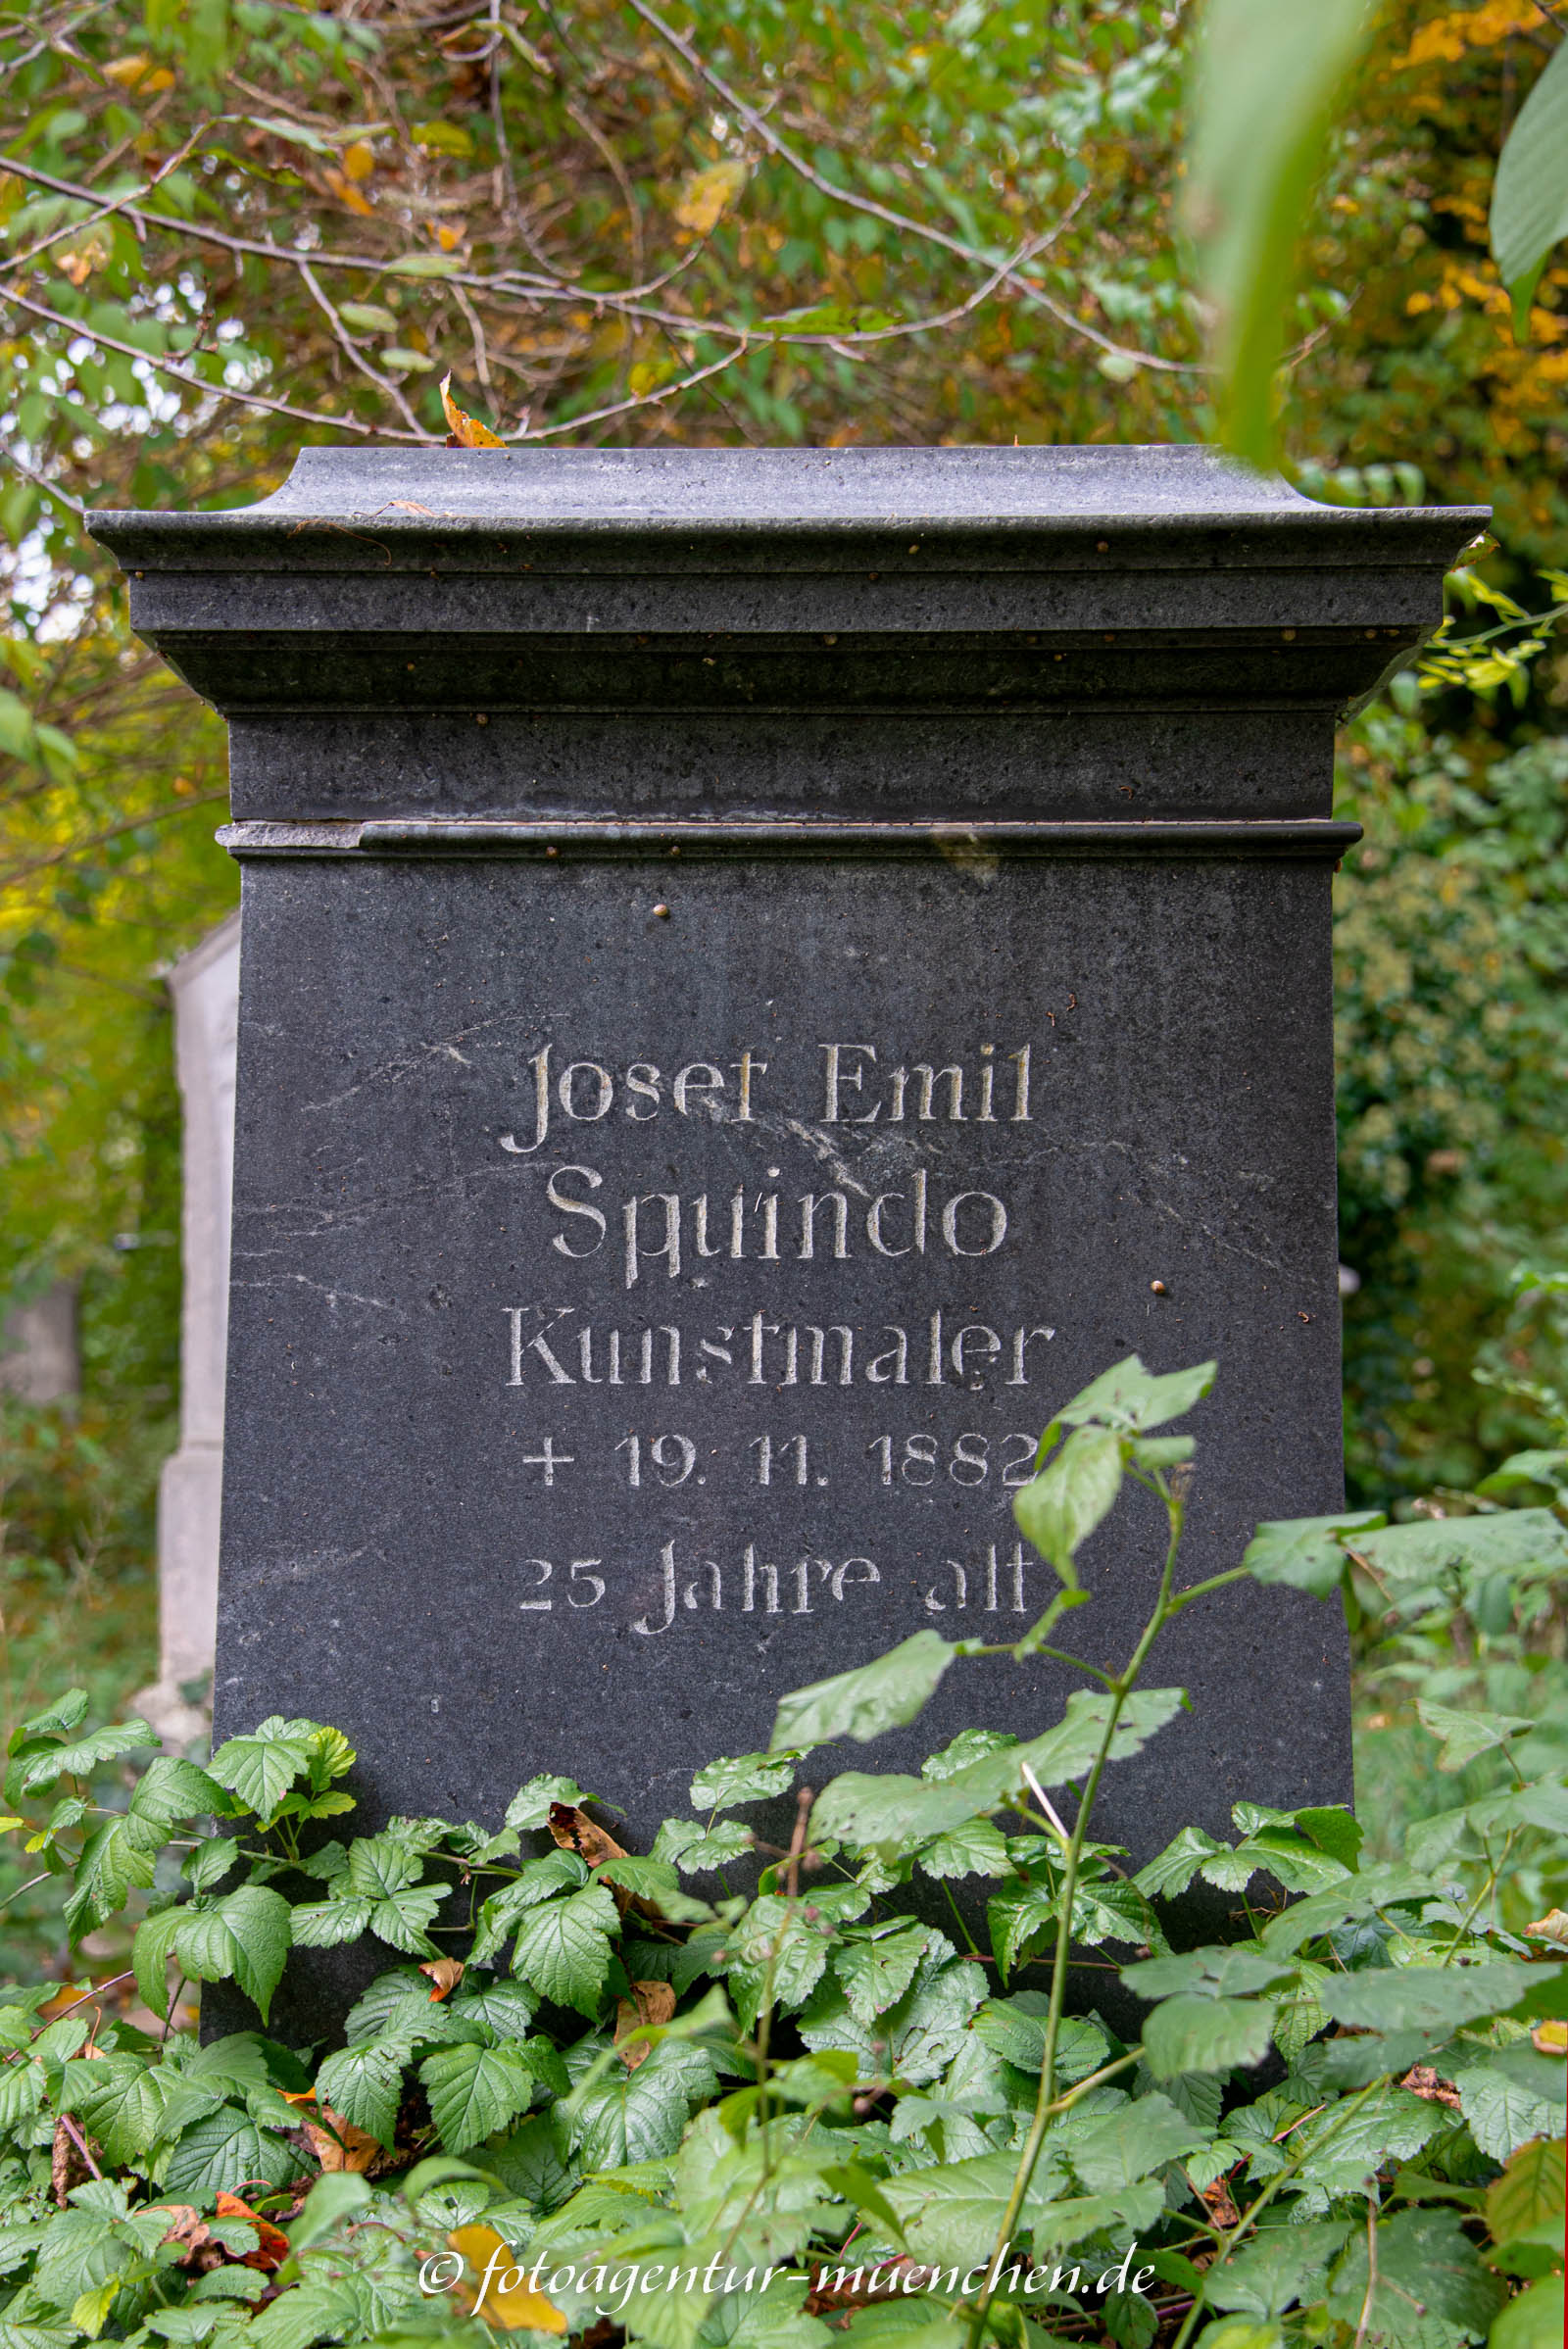 Josef Emil Squindo